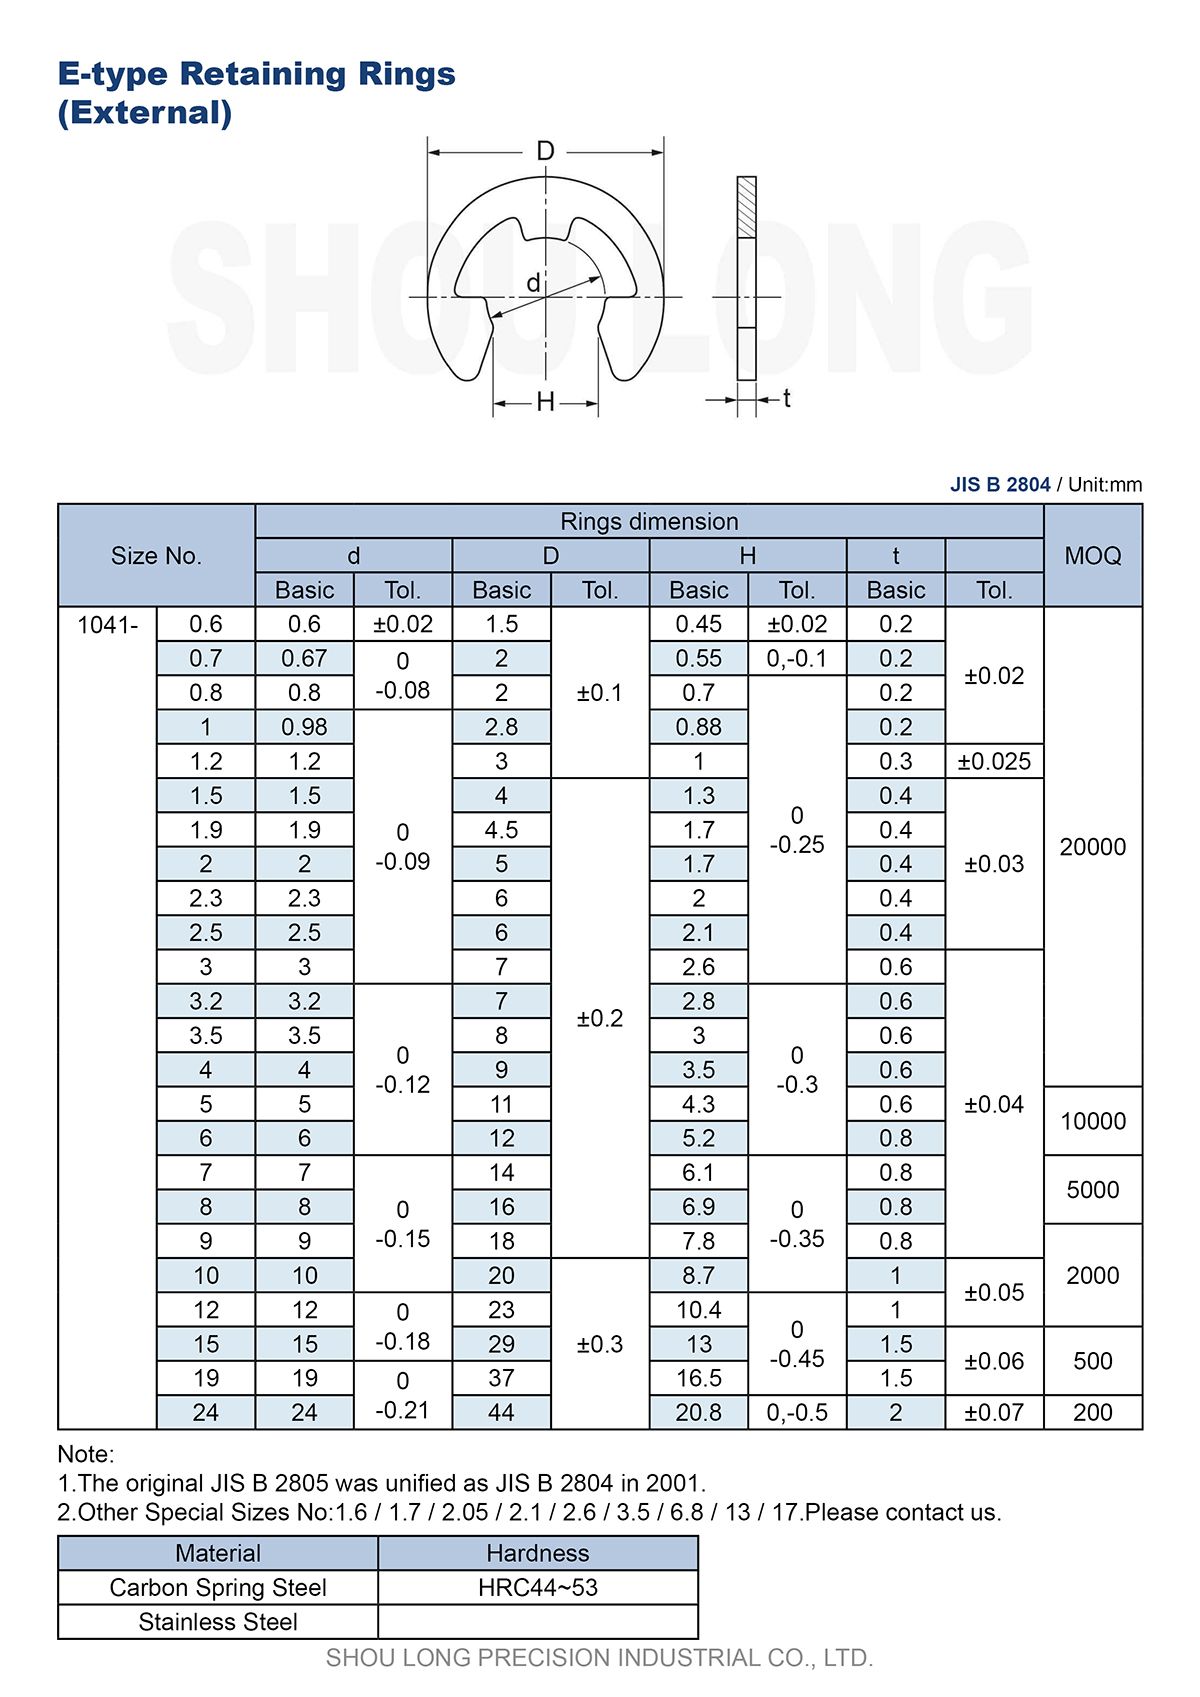 Spécification des bagues de retenue de type E métriques JIS pour arbre B2804